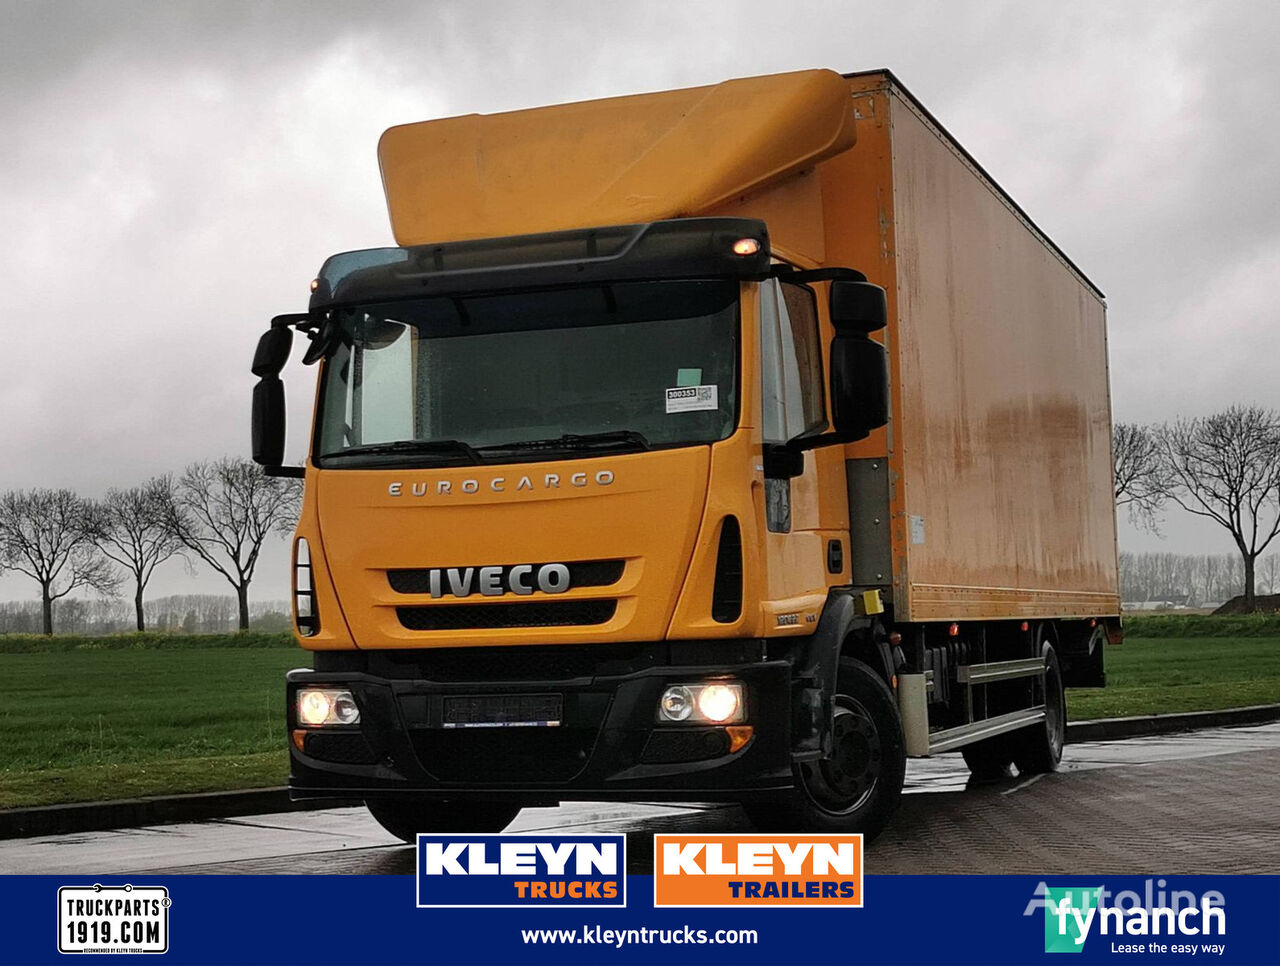 nákladní vozidlo furgon IVECO 120E22 EUROCARGO eev taillift